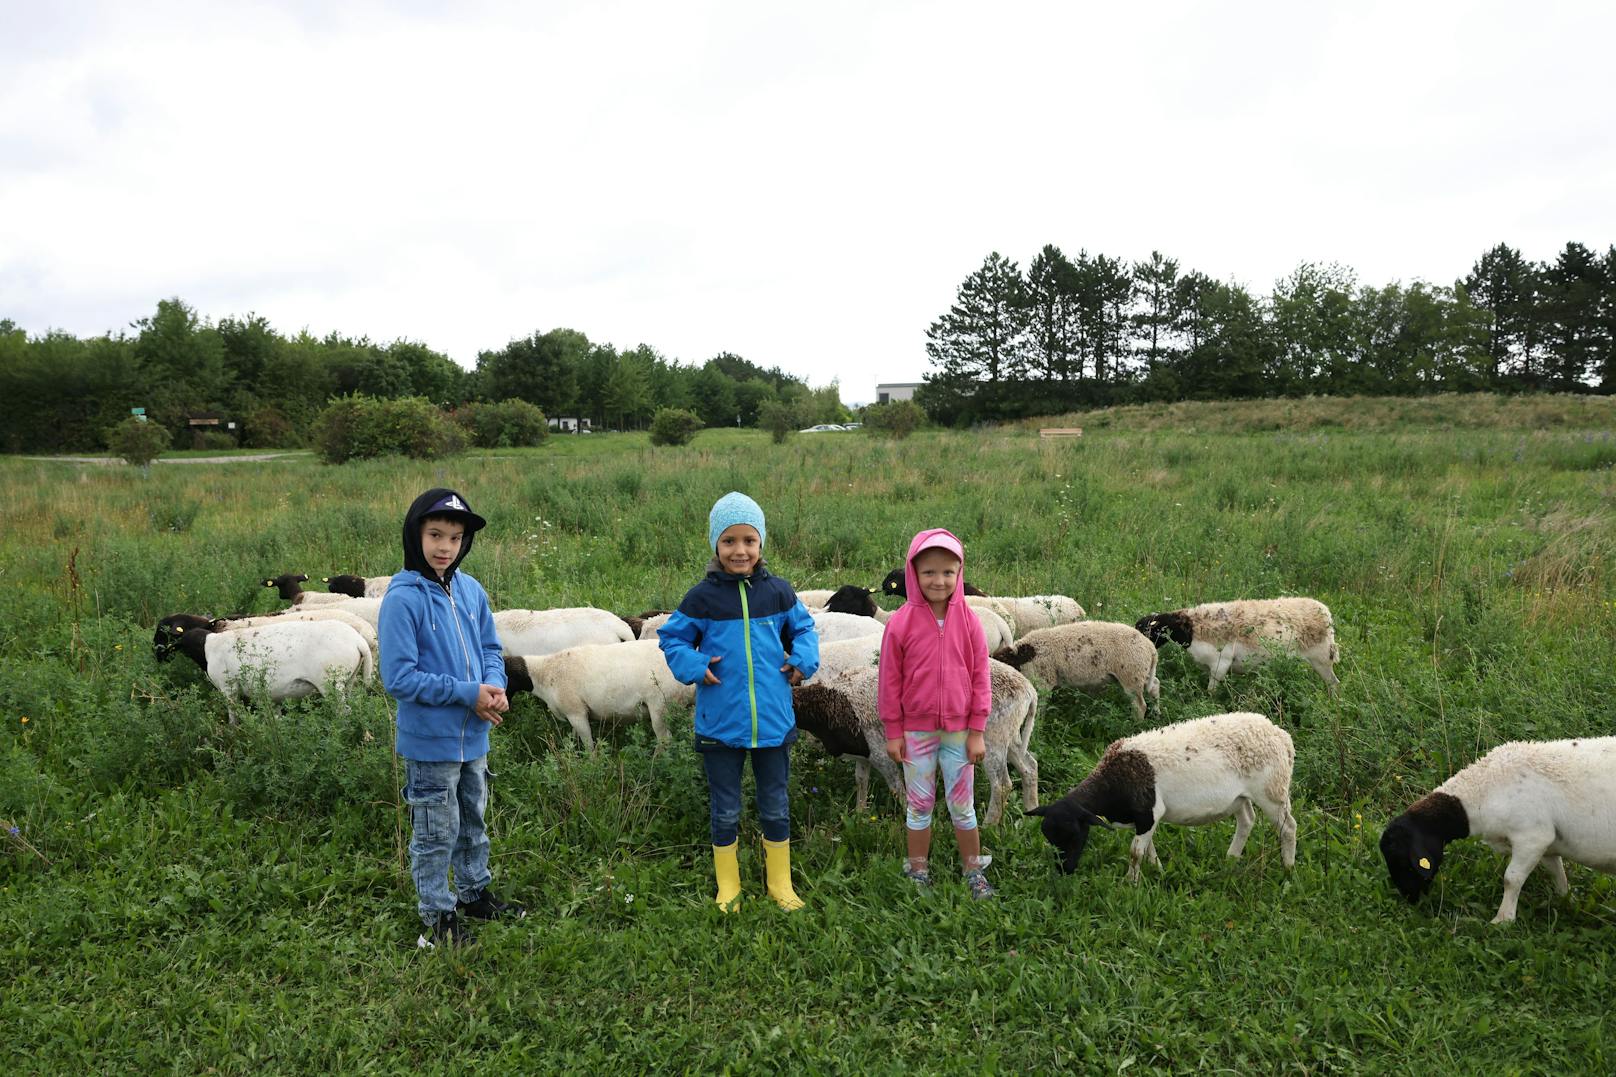 Doch die Skepsis war rasch überwunden. Noah, Erik und Zoe freuten sich, als die Schafe von sich aus näher kamen.